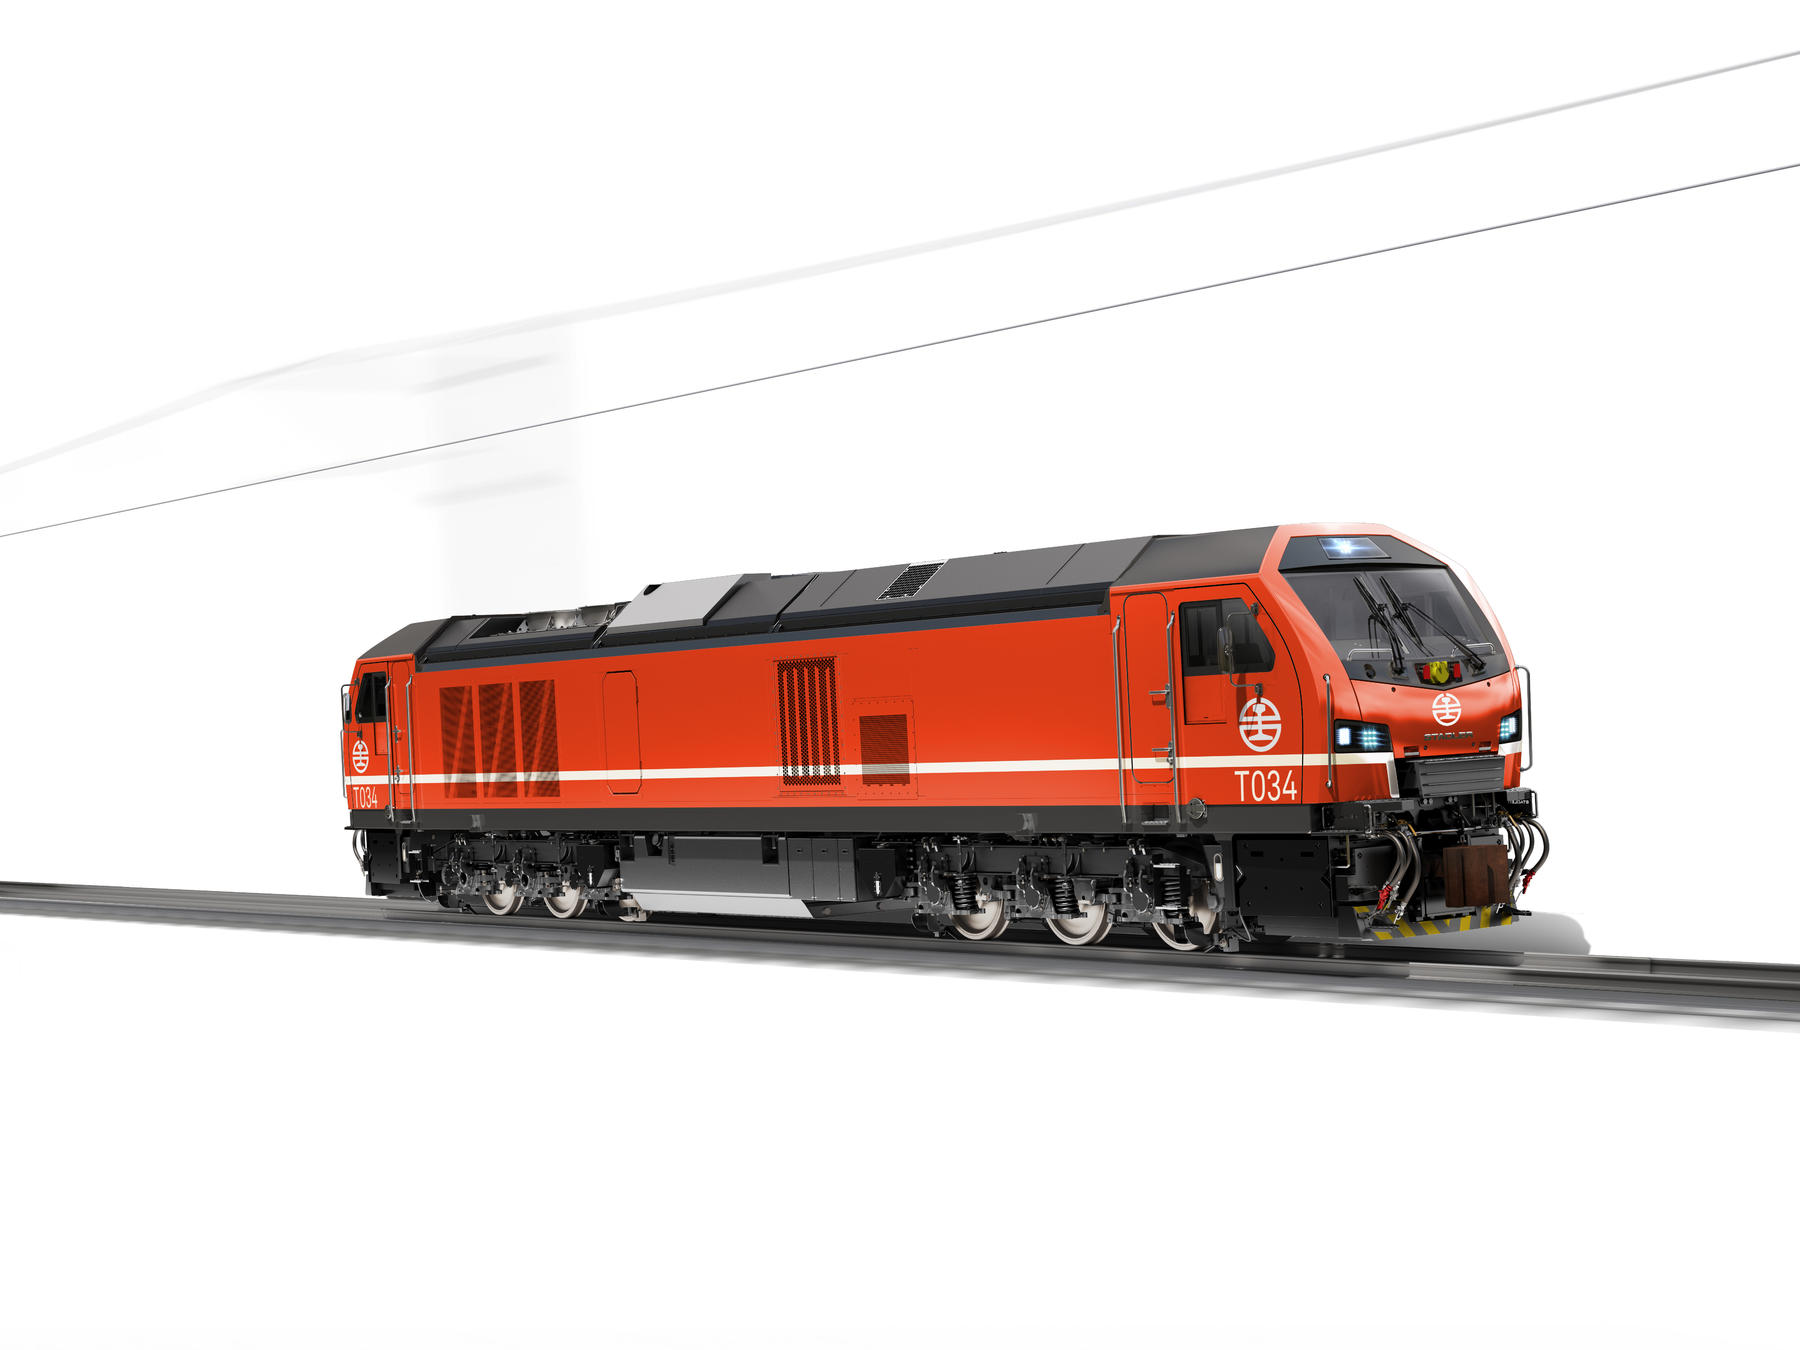 Stadler locomotive for Taiwan